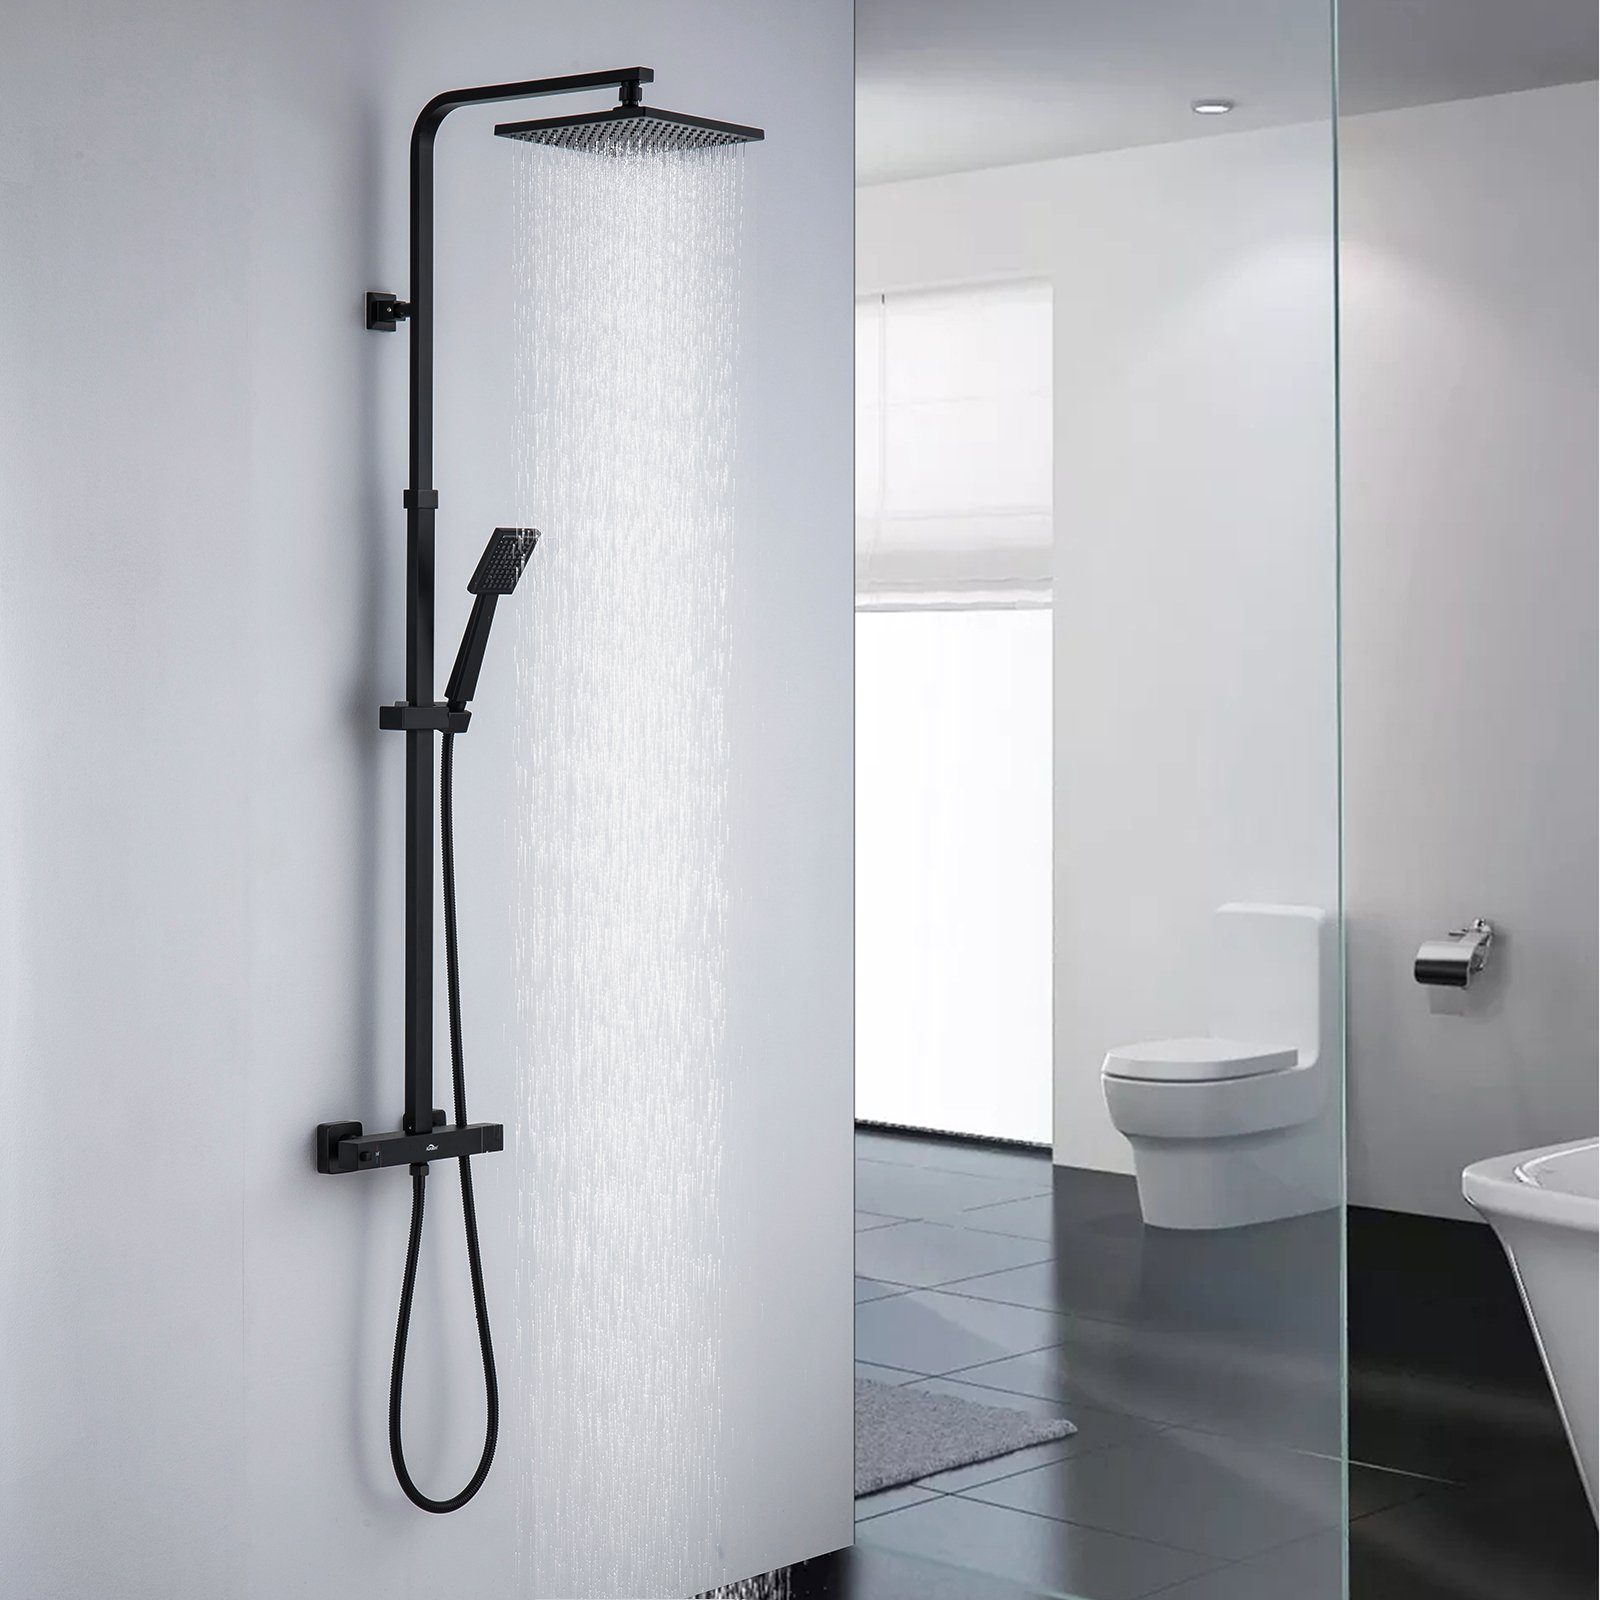 Auralum Duschsäule Duschsystem mit Thermostat Duscharmatur Duschset mit Regendusche, mit Handbrause und höhenverstellbar Duschstange | Brausegarnituren